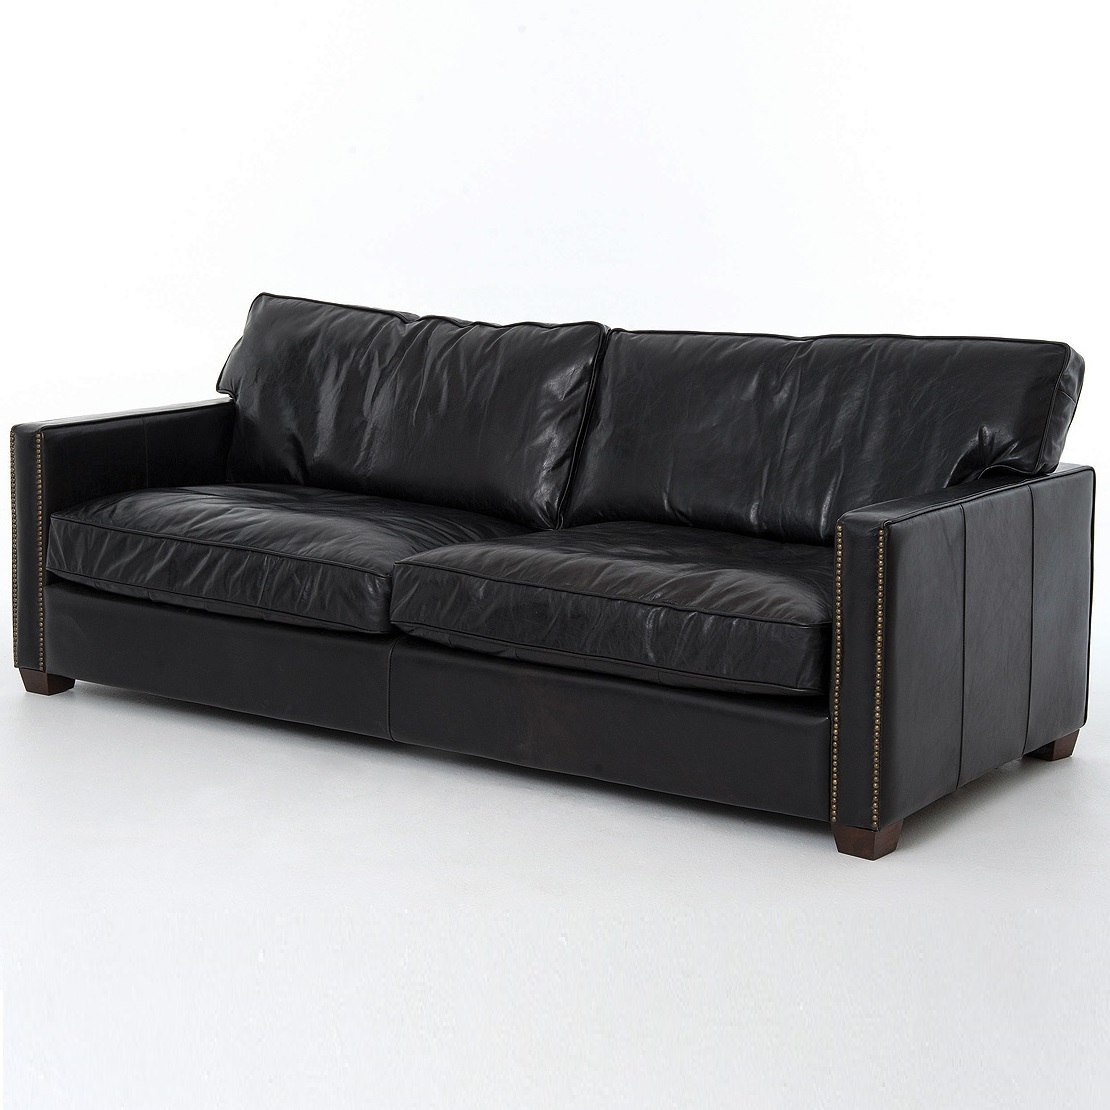 Larkin 3-seater vintage black leather sofa in used look NBNFBWZ